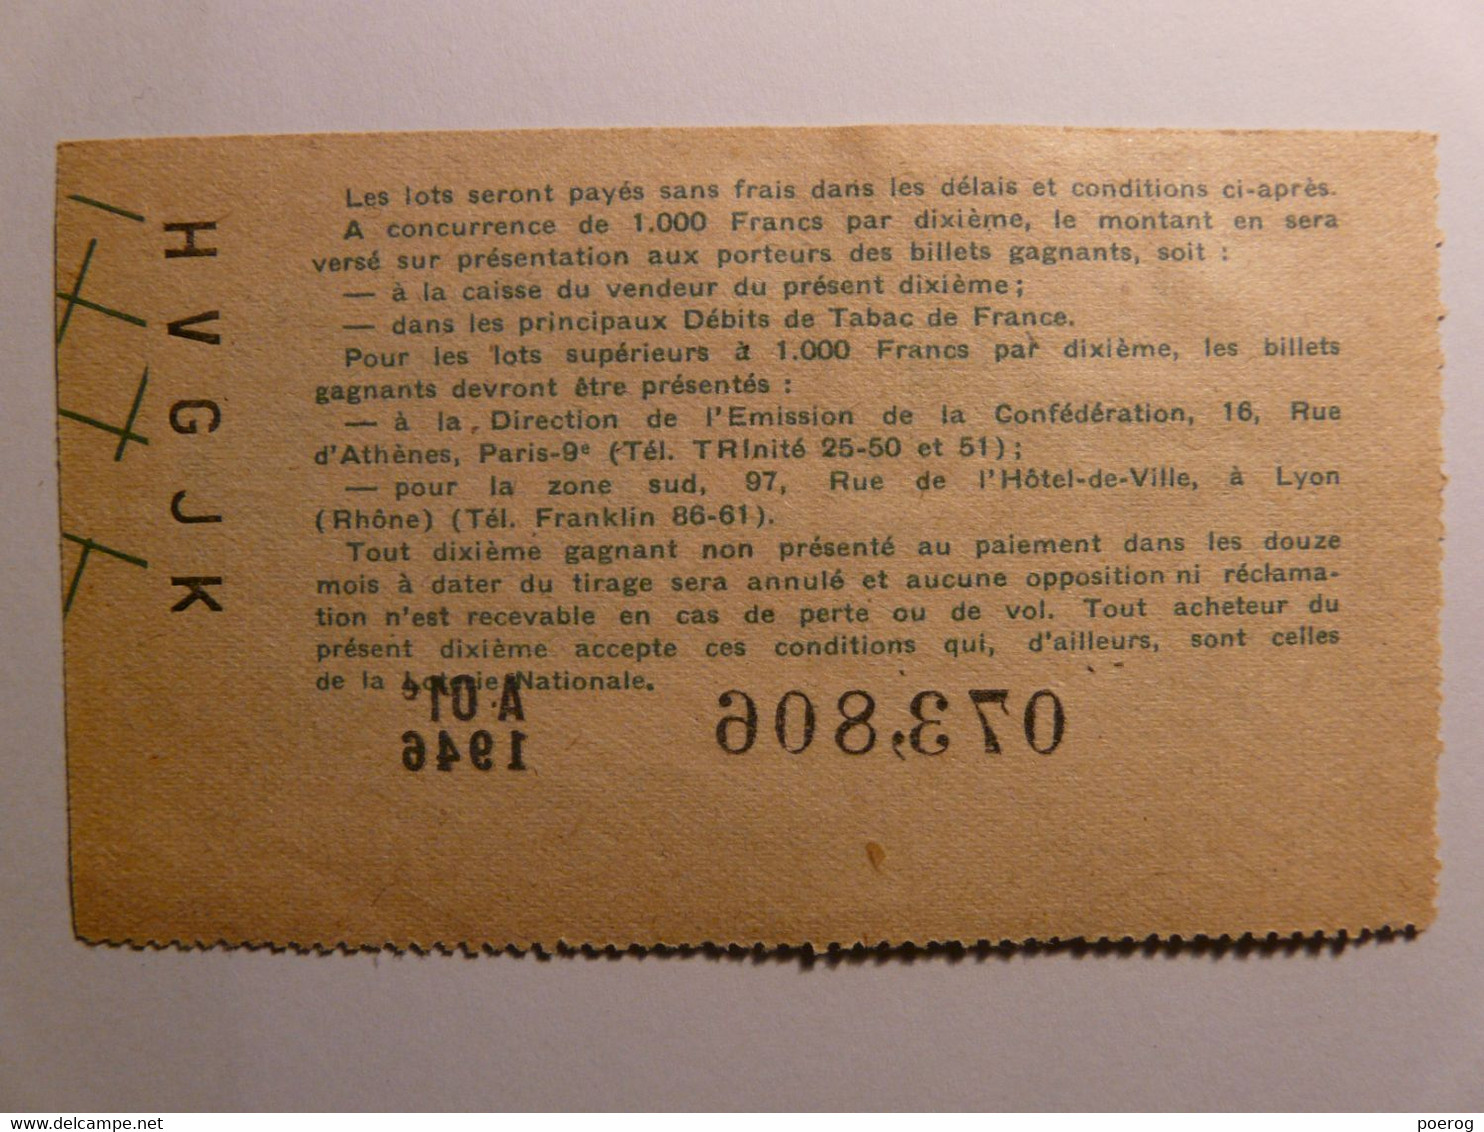 ANCIEN BILLET DE LOTERIE DE 1946 - A-01e N°073806 Avec Son TIMBRE Confédération Débitants De Tabac - Ticket De Loterie - Billets De Loterie